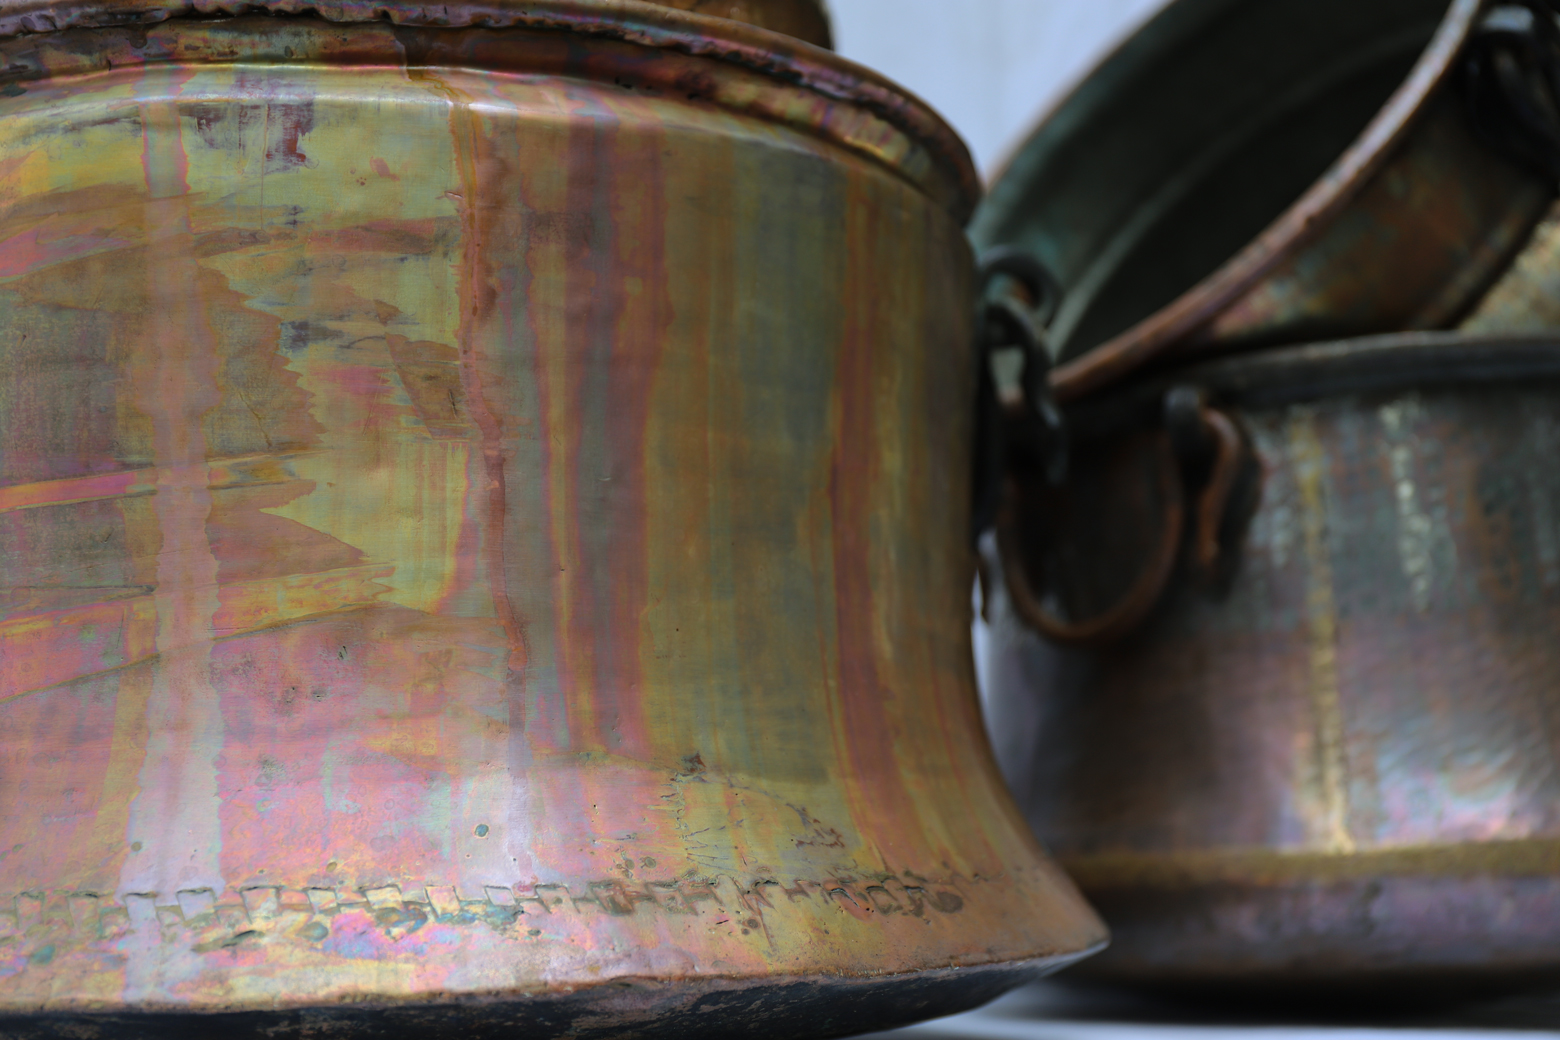 アンティーク 銅 釜 ポットカバー トルコ インテリア/Antique Copper Cauldron Pot